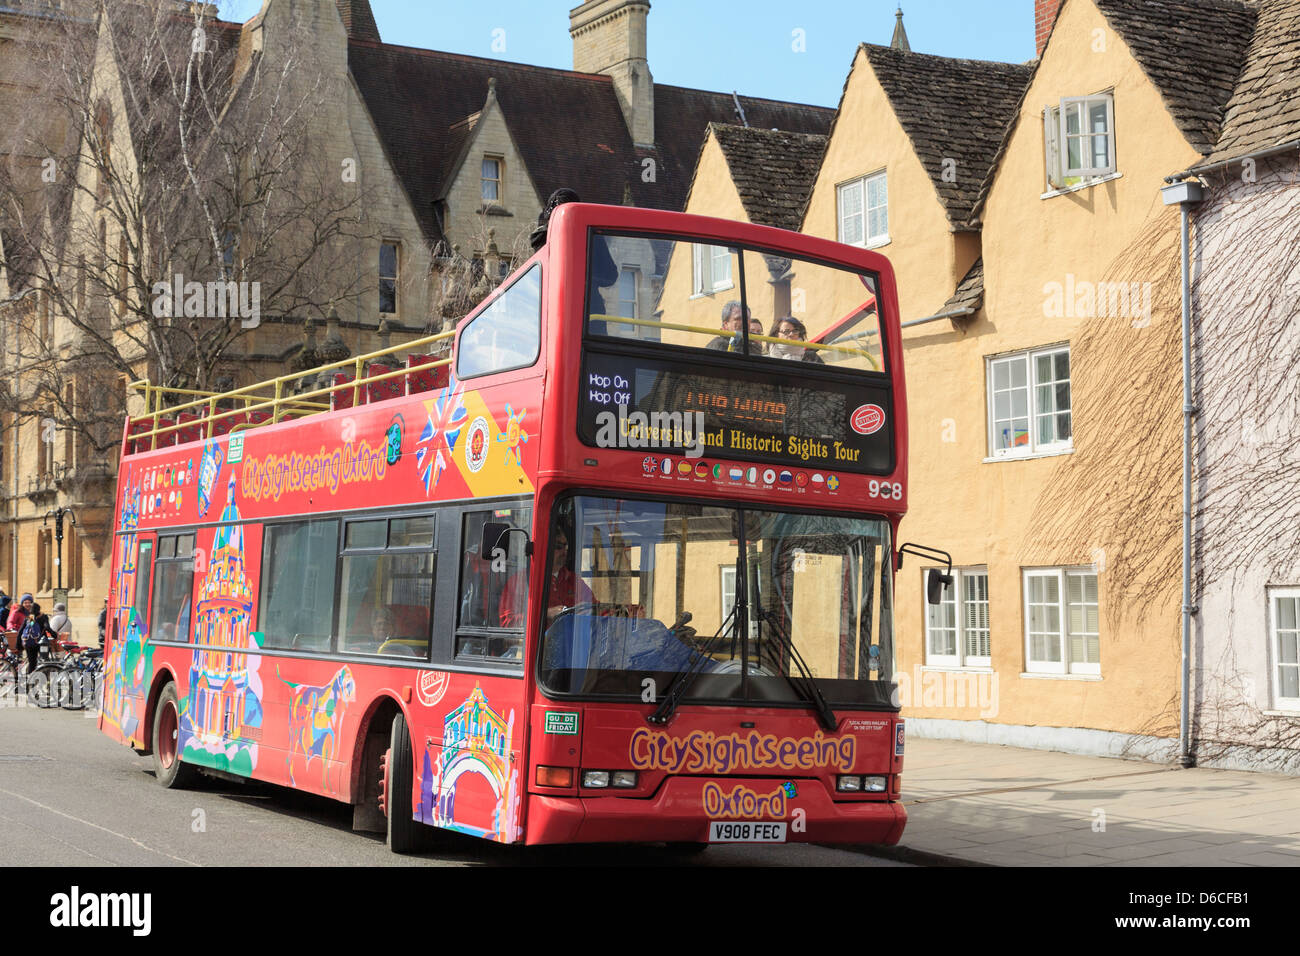 Red hop on hop off bus touristiques touristes sur l'université et des sites historiques de la ville. oxford, Oxfordshire, England, UK, Grande-Bretagne Banque D'Images